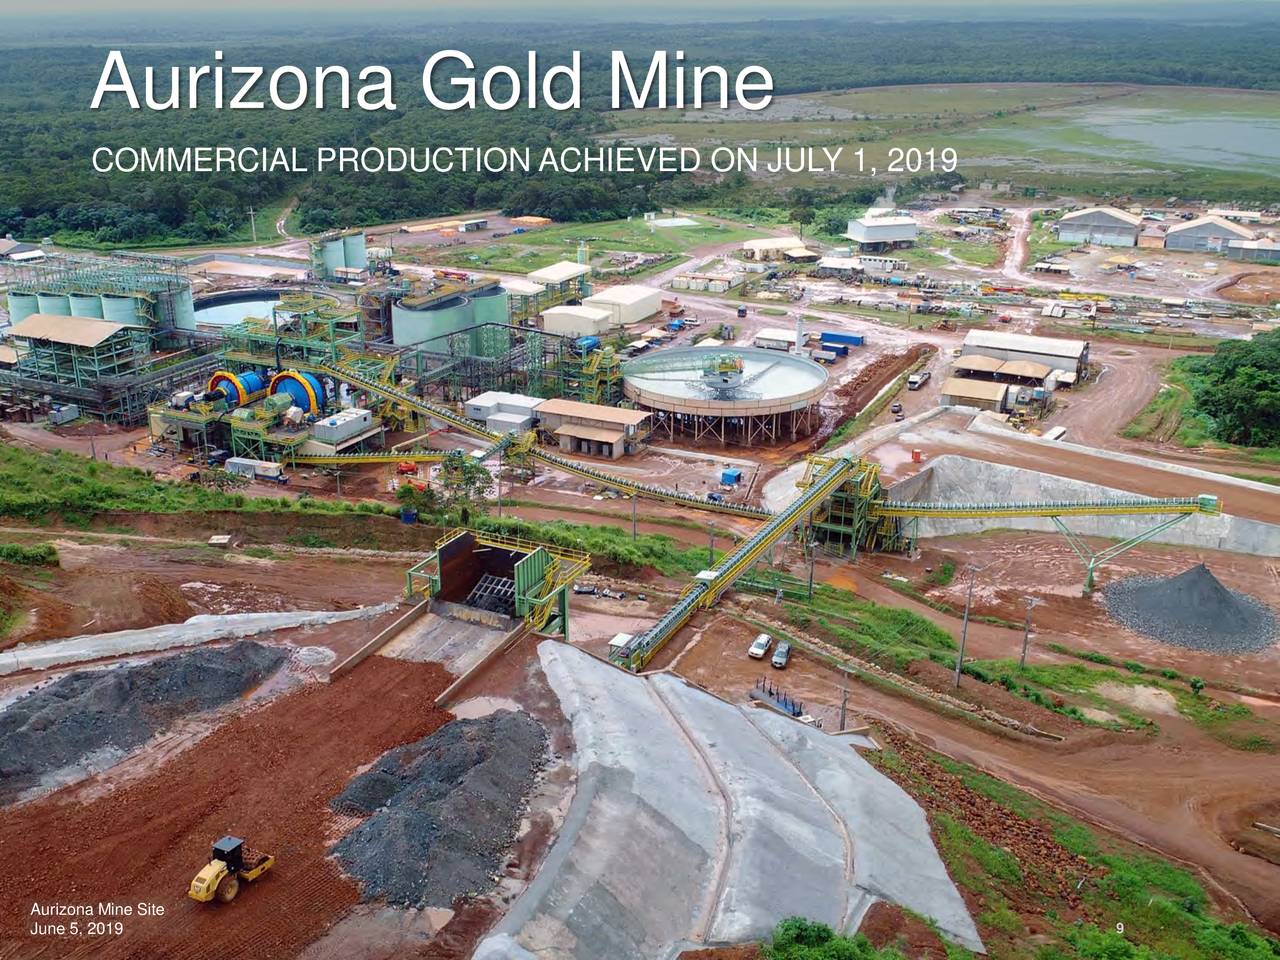 Aurizona Gold Mine